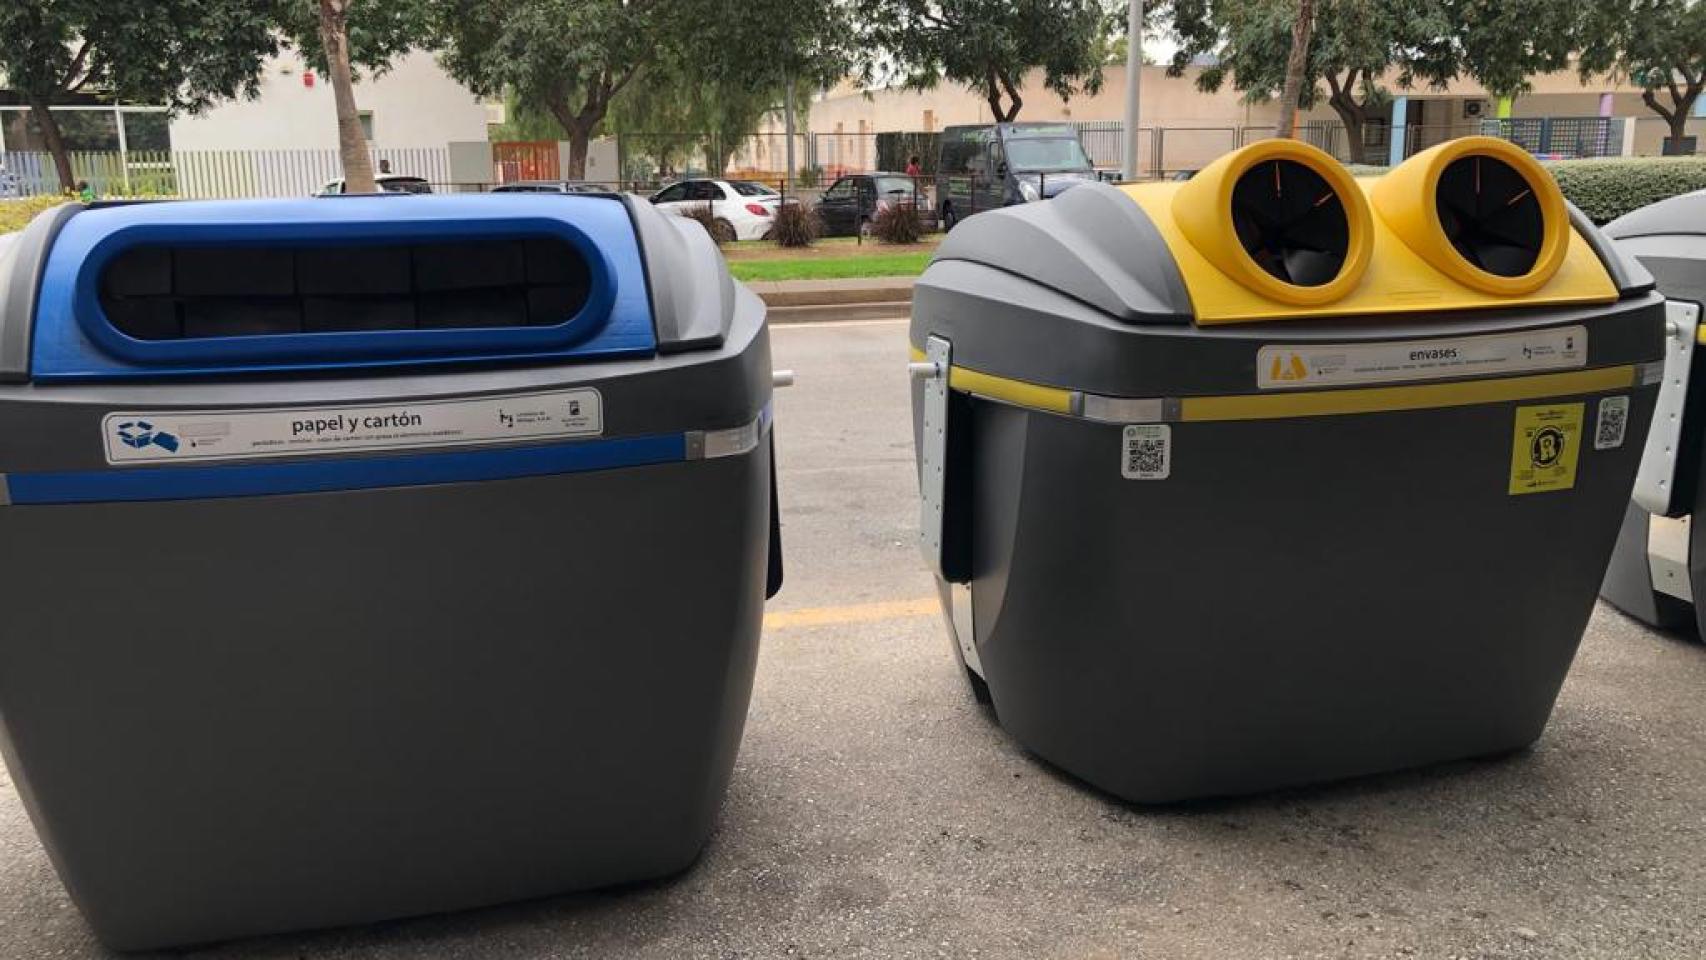 La Diputación implantará la recogida selectiva de basura orgánica en cinco  municipios con la instalación de 500 contenedores marrones - Oficina de  Comunicación - Diputación de Málaga